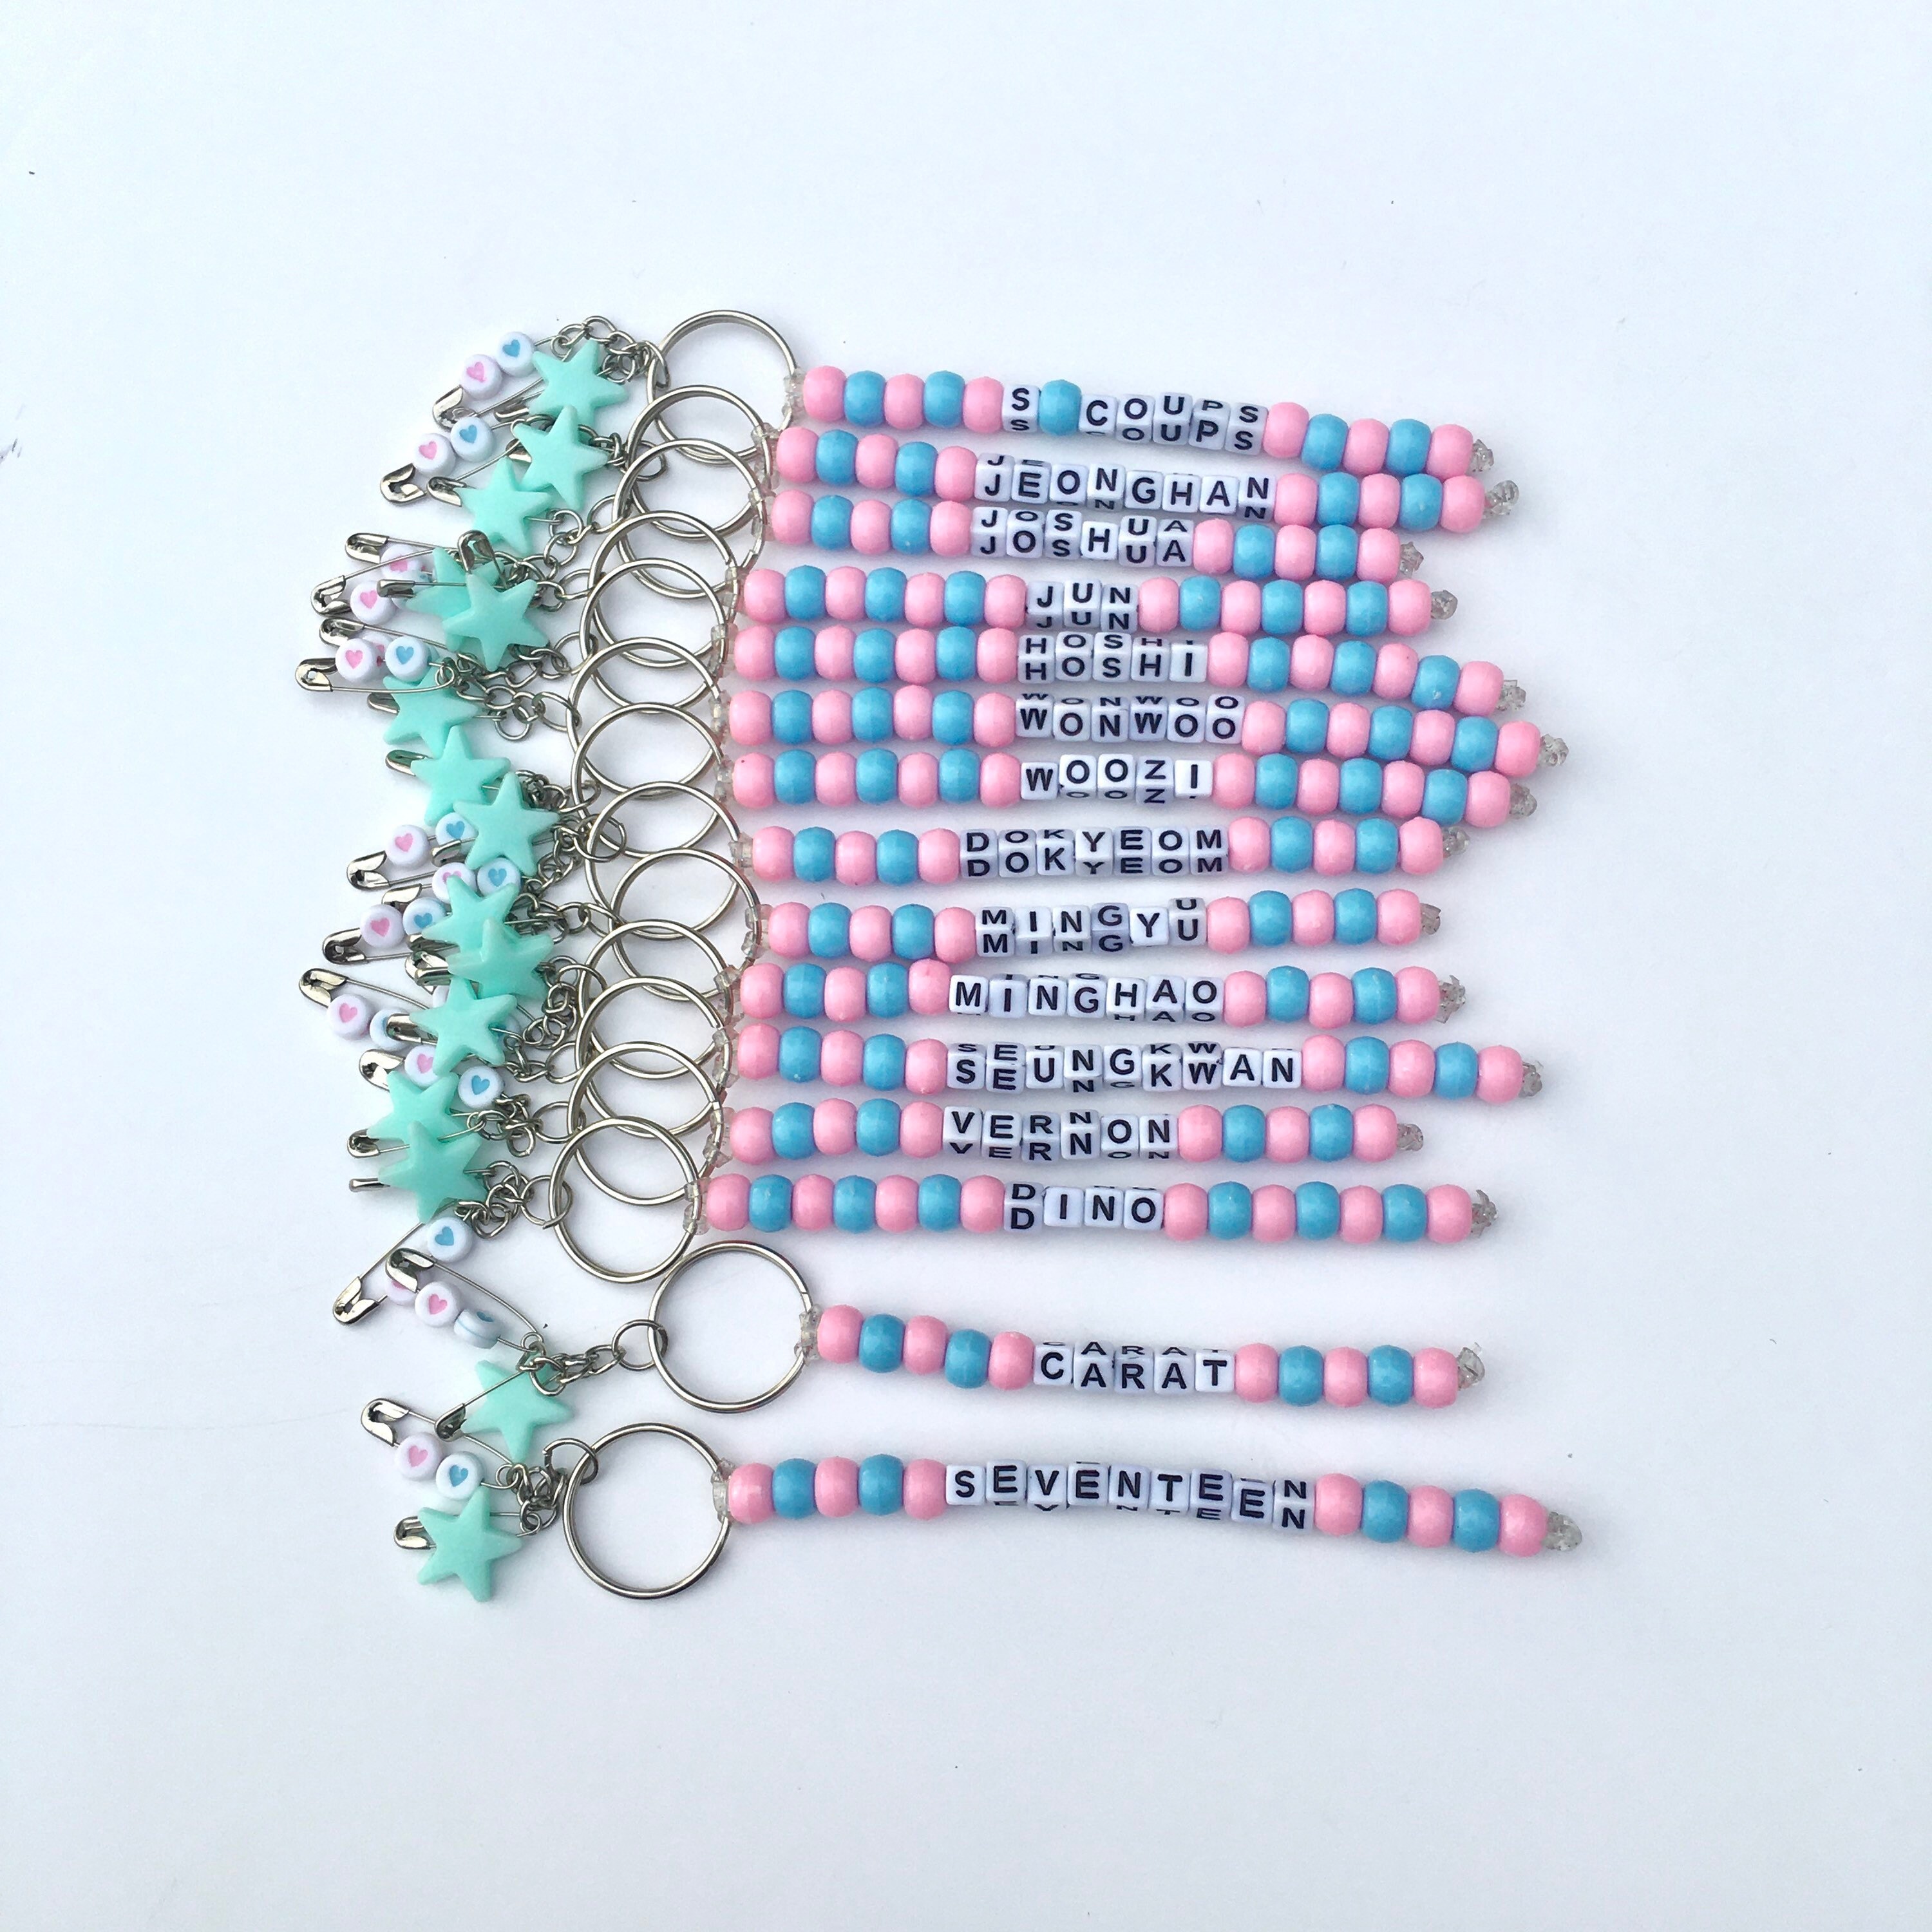 Ashnikko Kandi Bracelet Variety Stretchy Bracelets, Demidevil, Multicolor,  Bracelets Bundle, Teenager Gifts, for Her, Assorted 